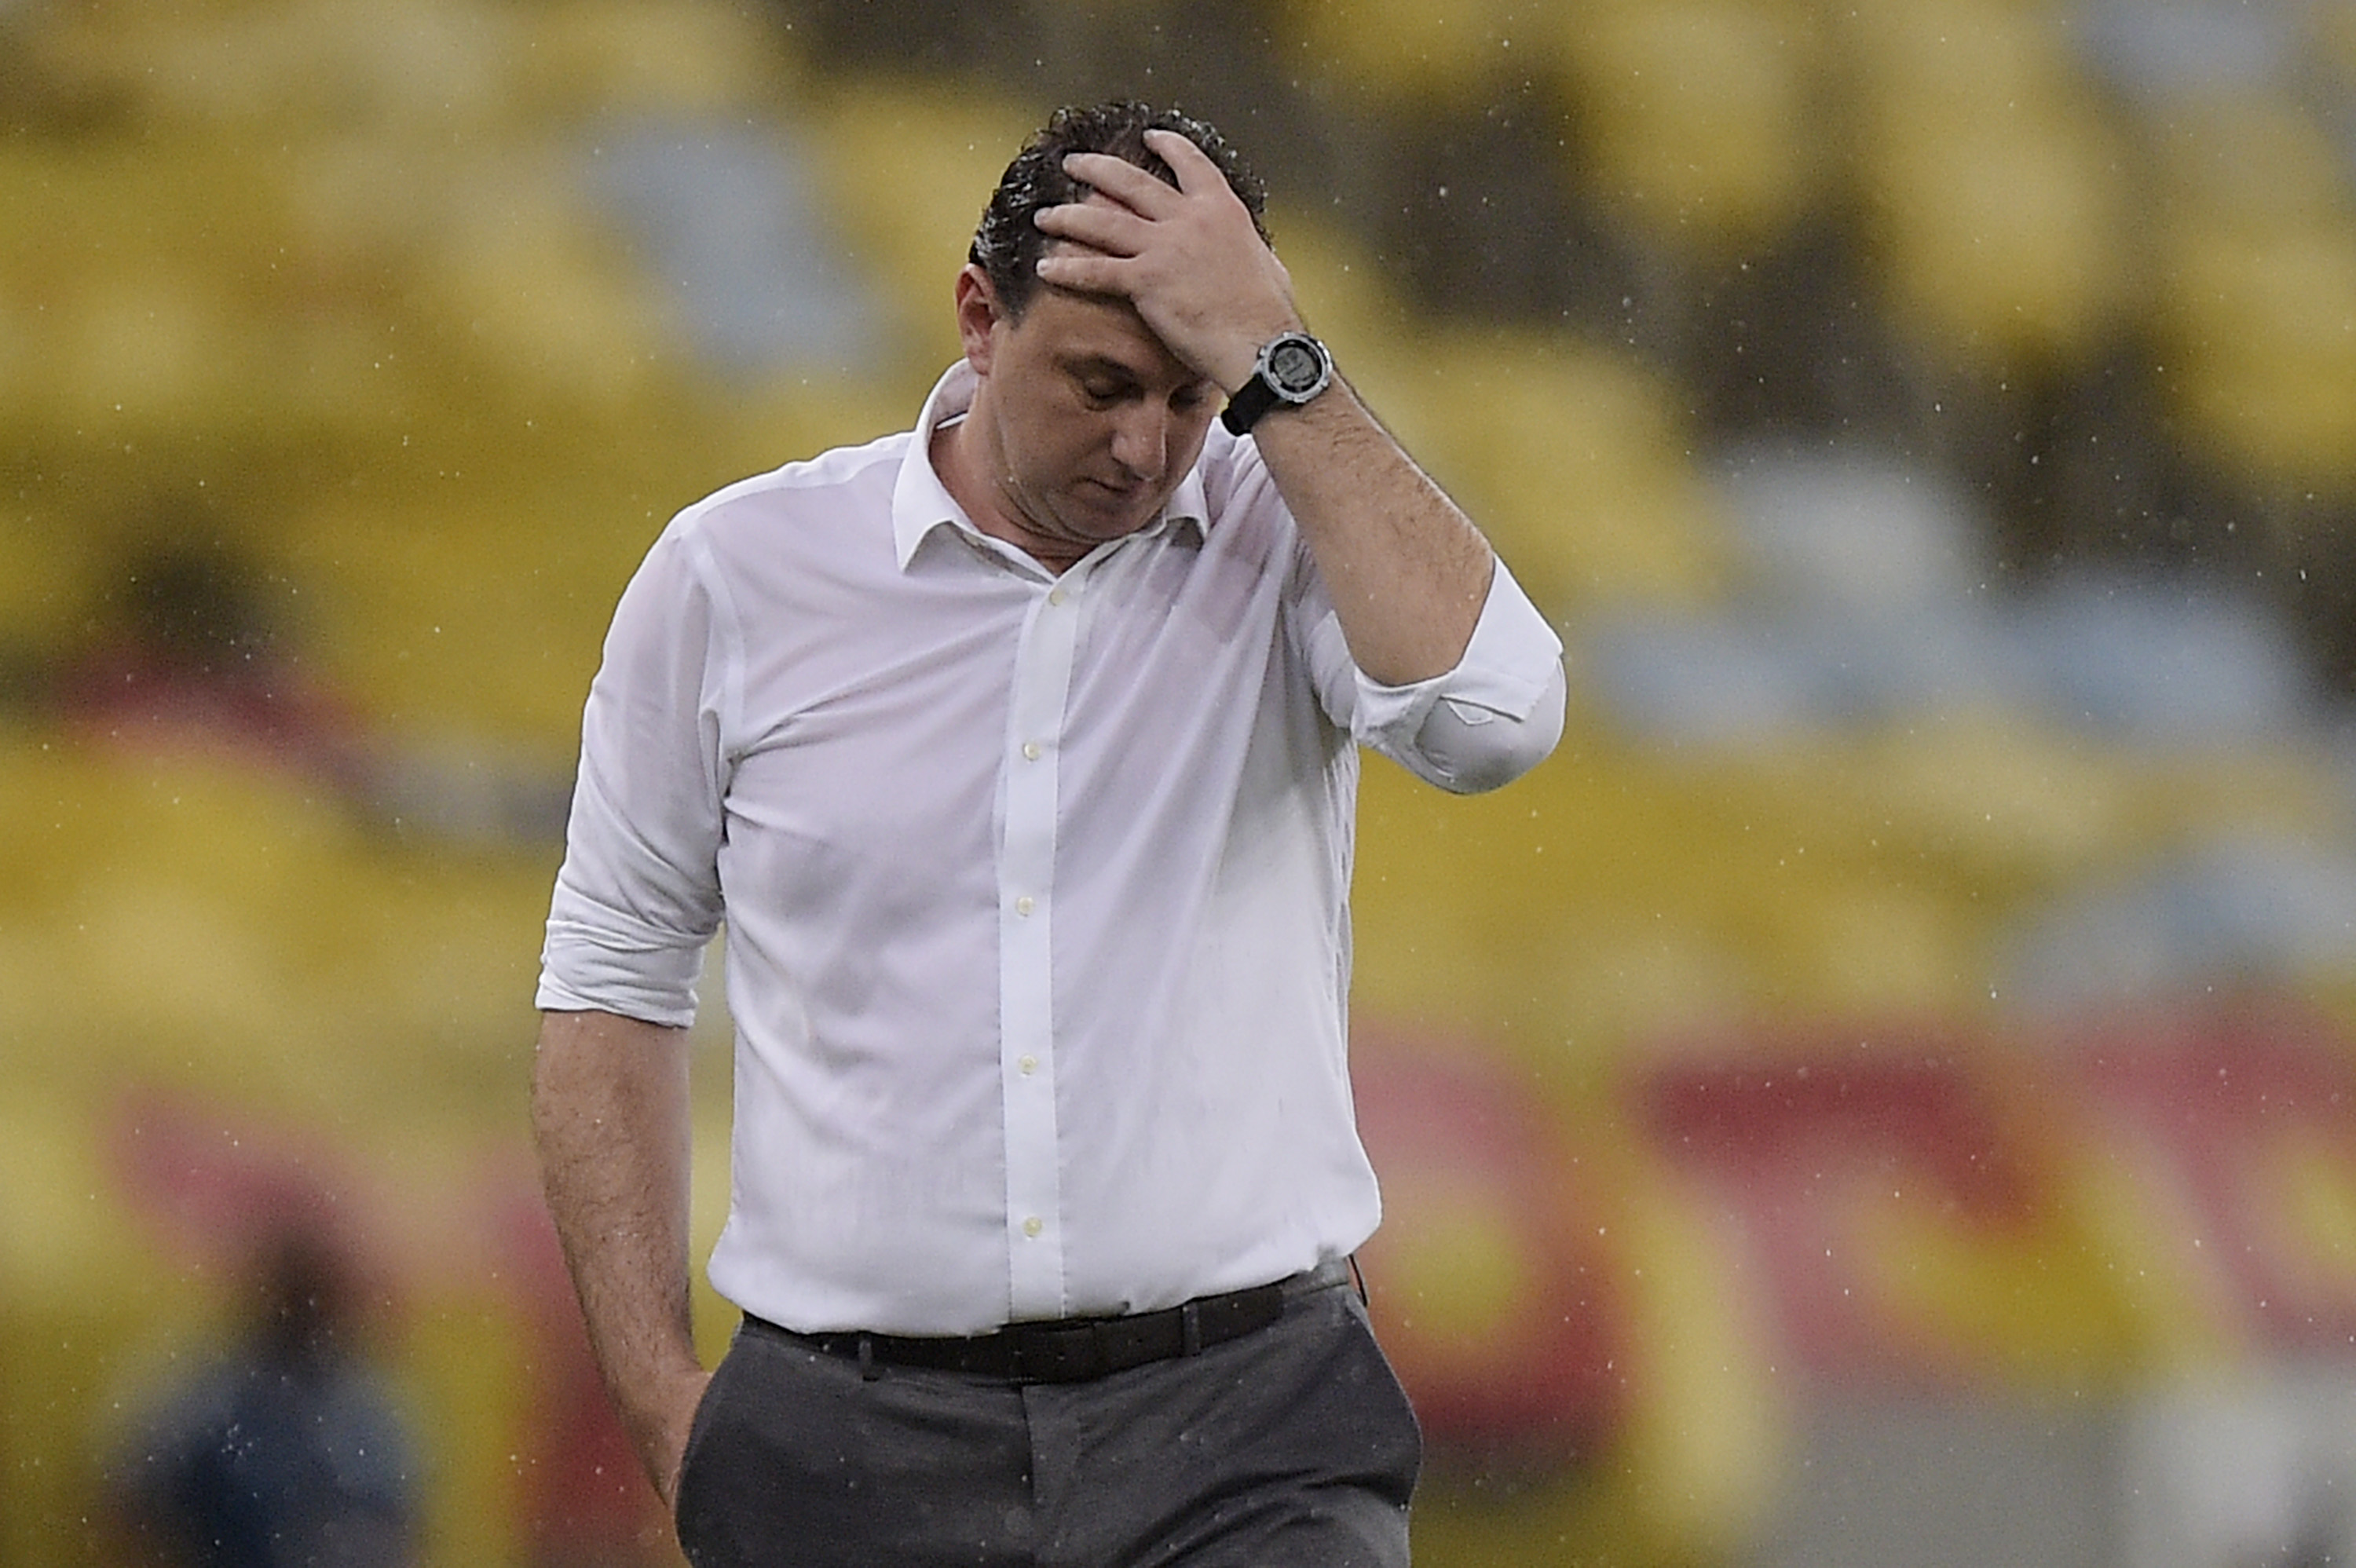 Flamengo perde nos pênaltis para o Racing e se despede da Libertadores